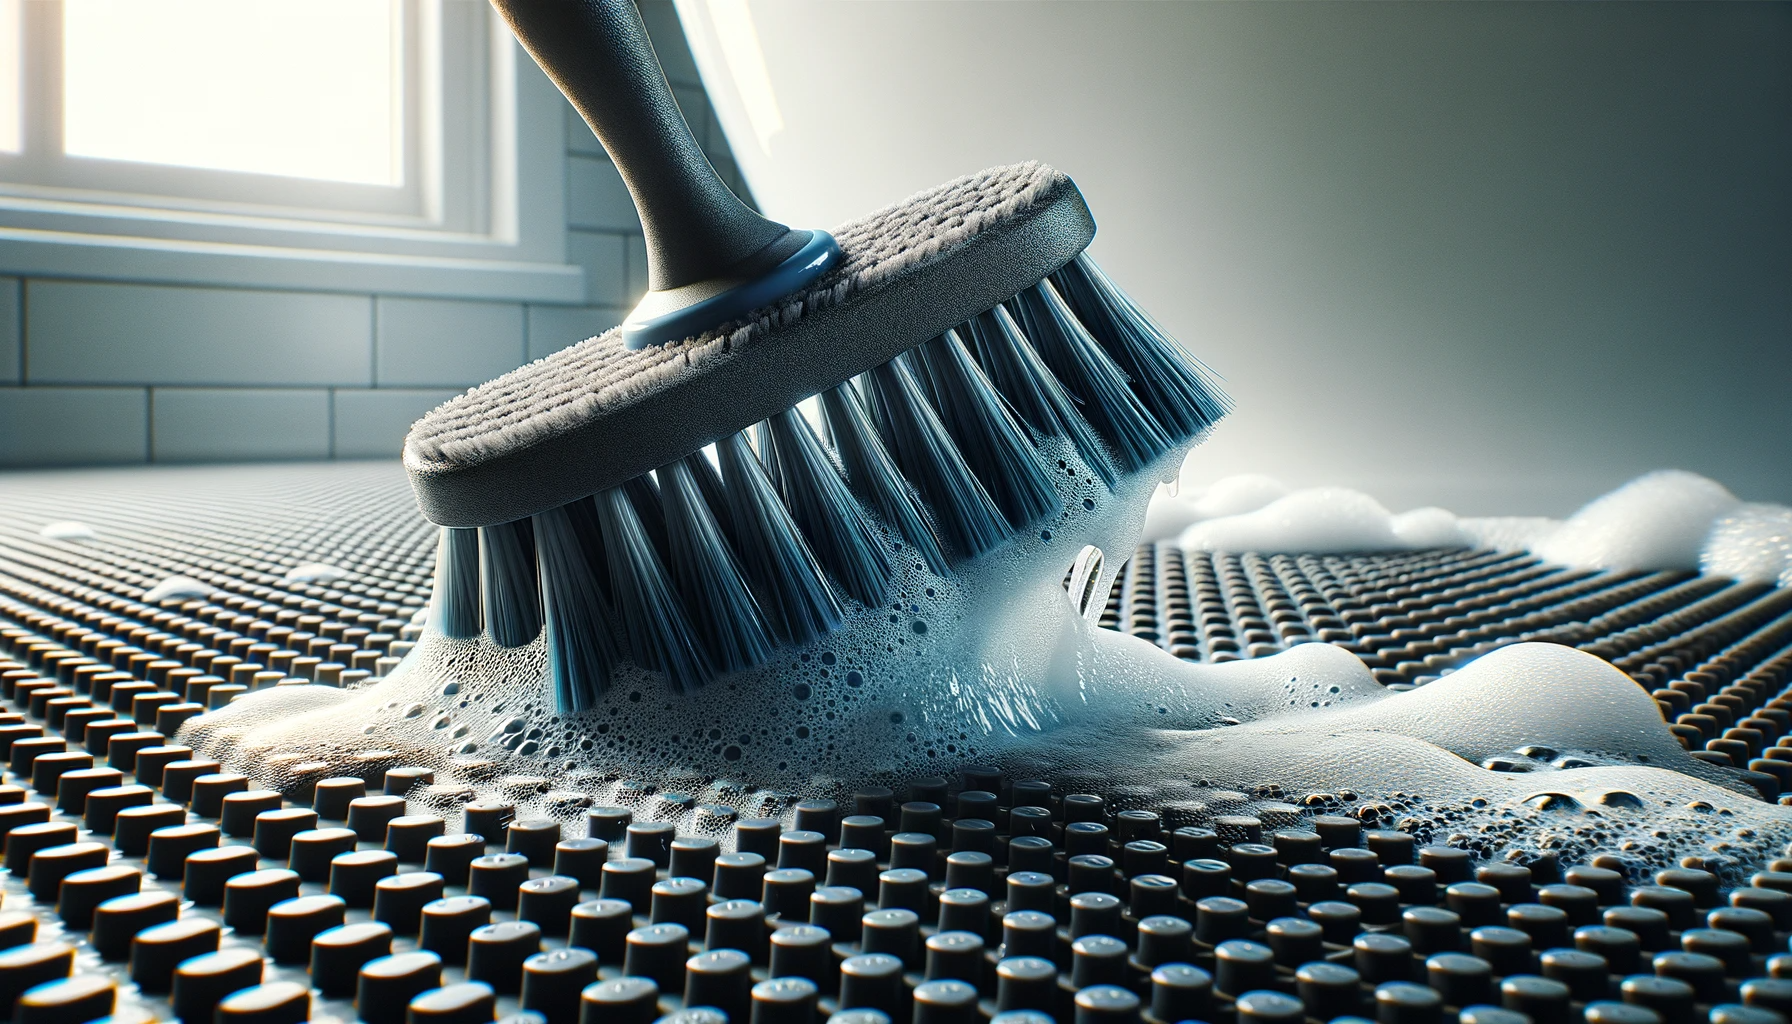 Astuce nettoyage : Voici comment éviter l'humidité dans vos armoires !